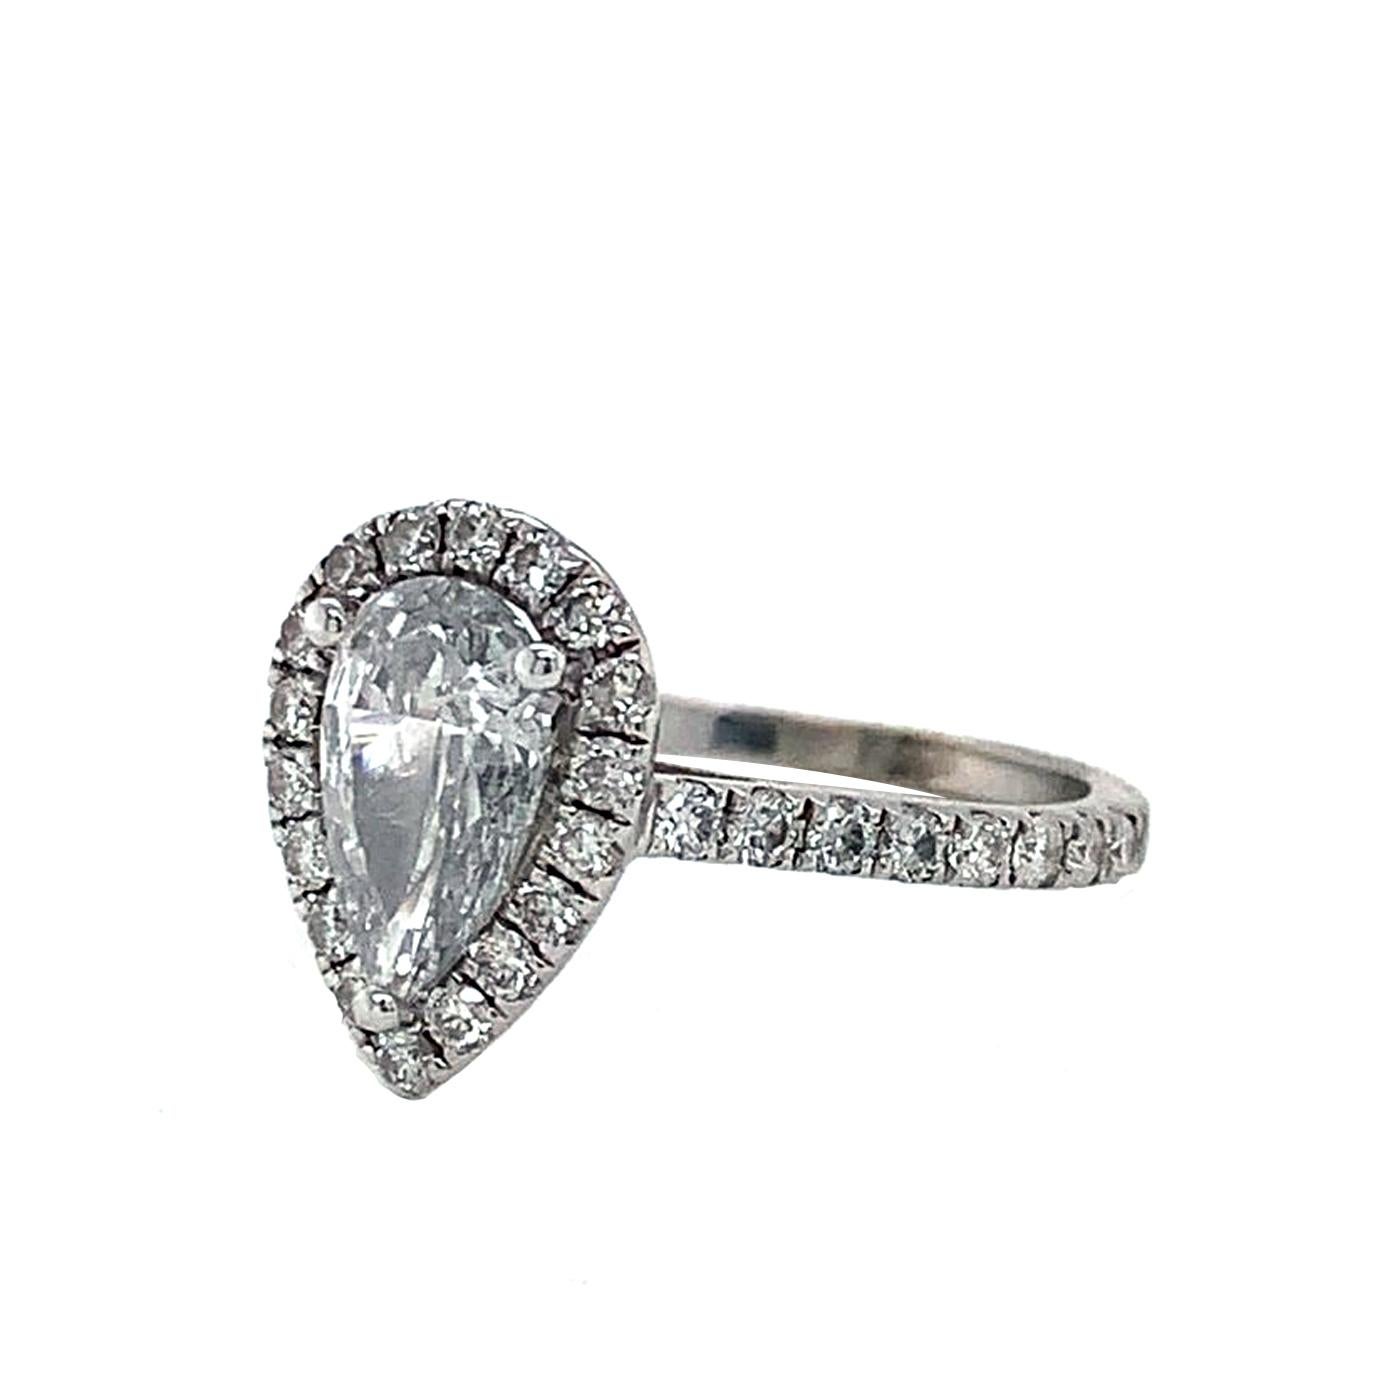 Créée en platine, cette envoûtante bague de fiançailles en diamant met en valeur un diamant central en forme de poire de 0,91ct, certifié GIA. Il est rehaussé d'un halo scintillant de diamants ronds de taille brillant ainsi que d'une rangée de